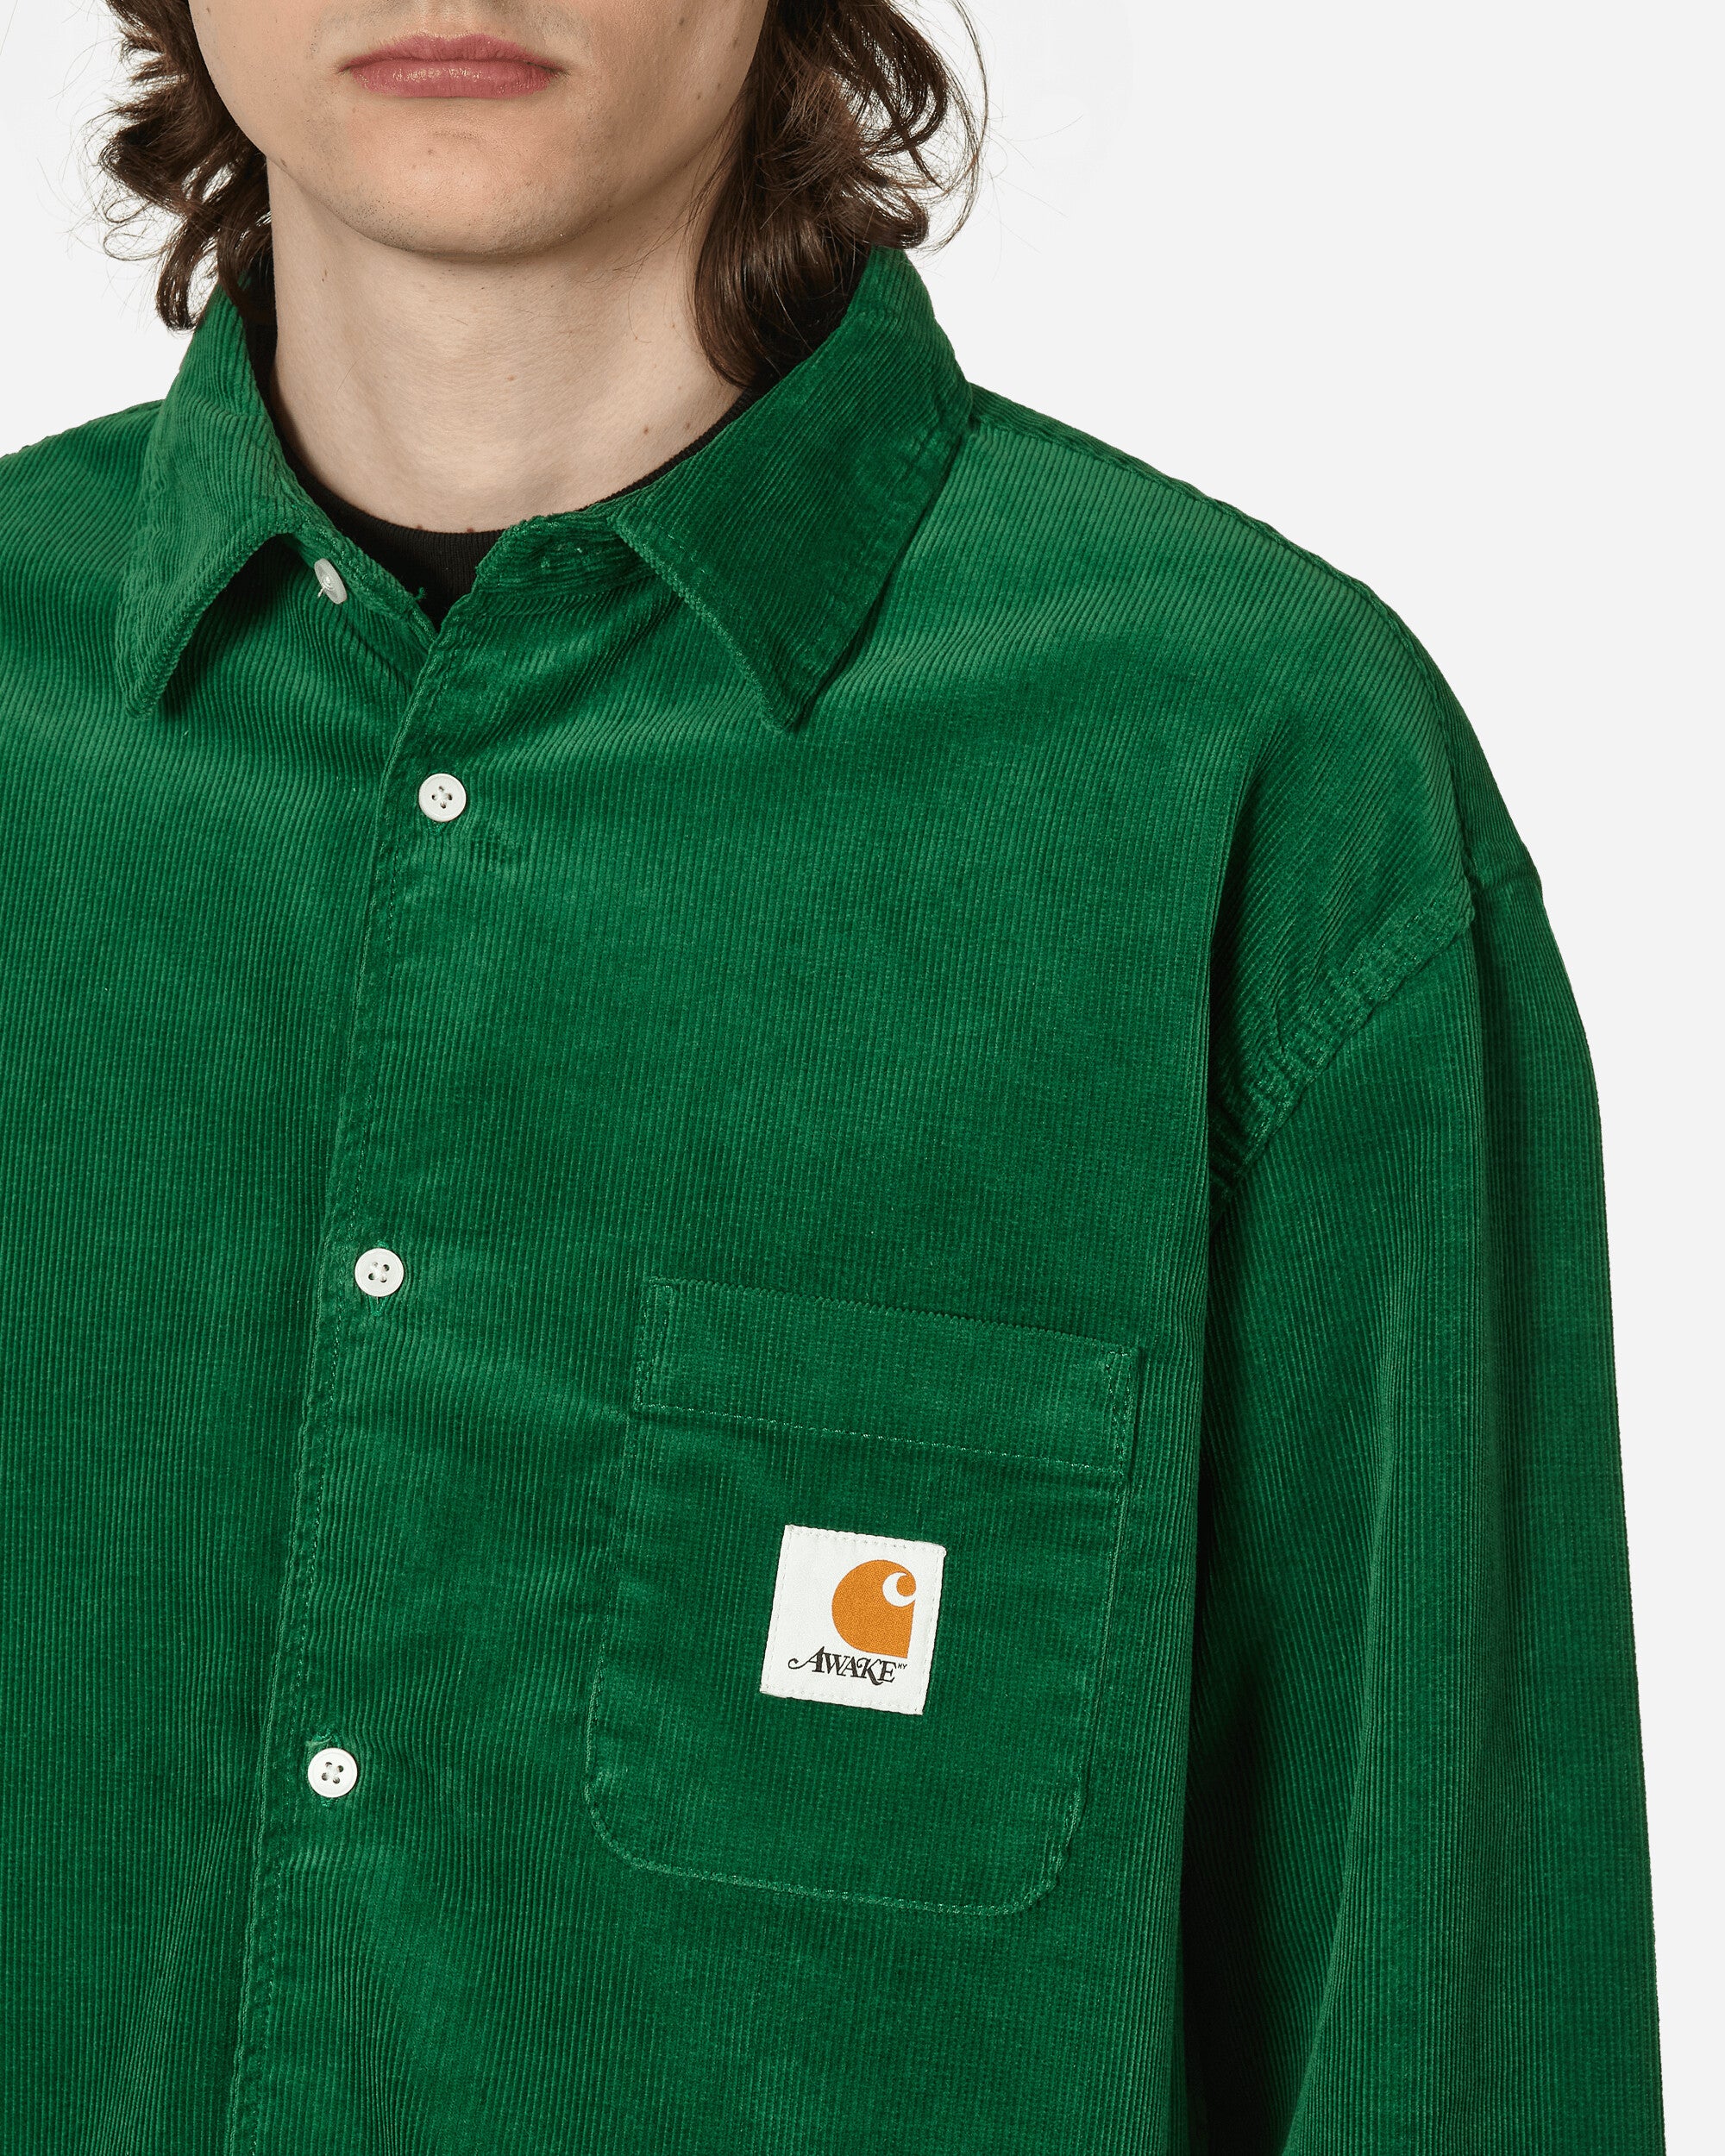 Awake Ny Green Carhartt Wip Edition Shirt | ModeSens